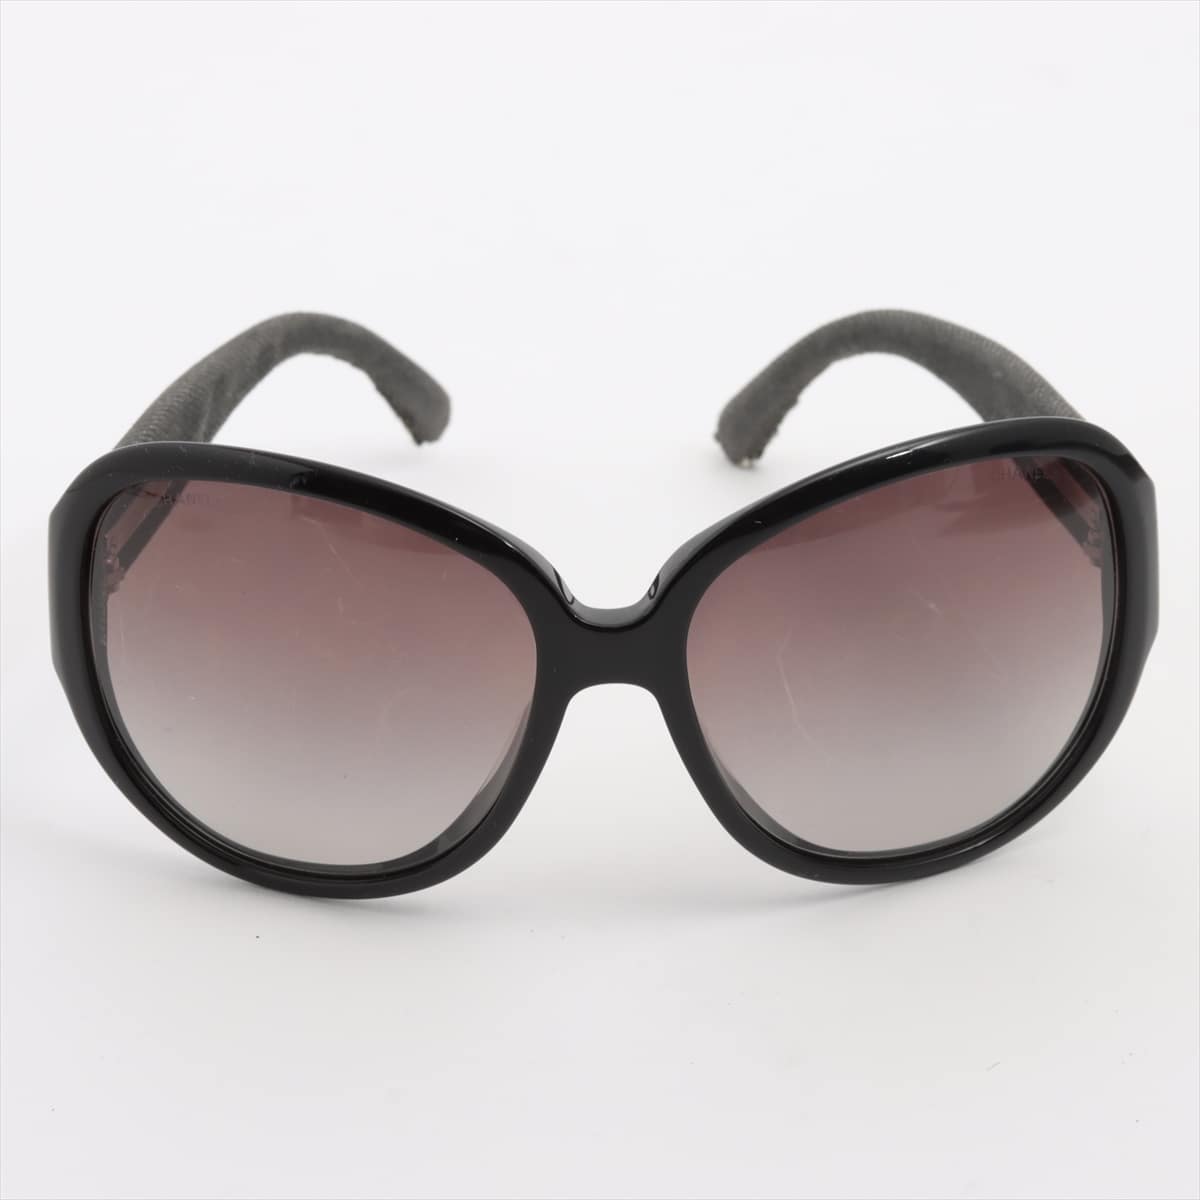 Chanel Coco Mark Sunglasses Plastic Grey